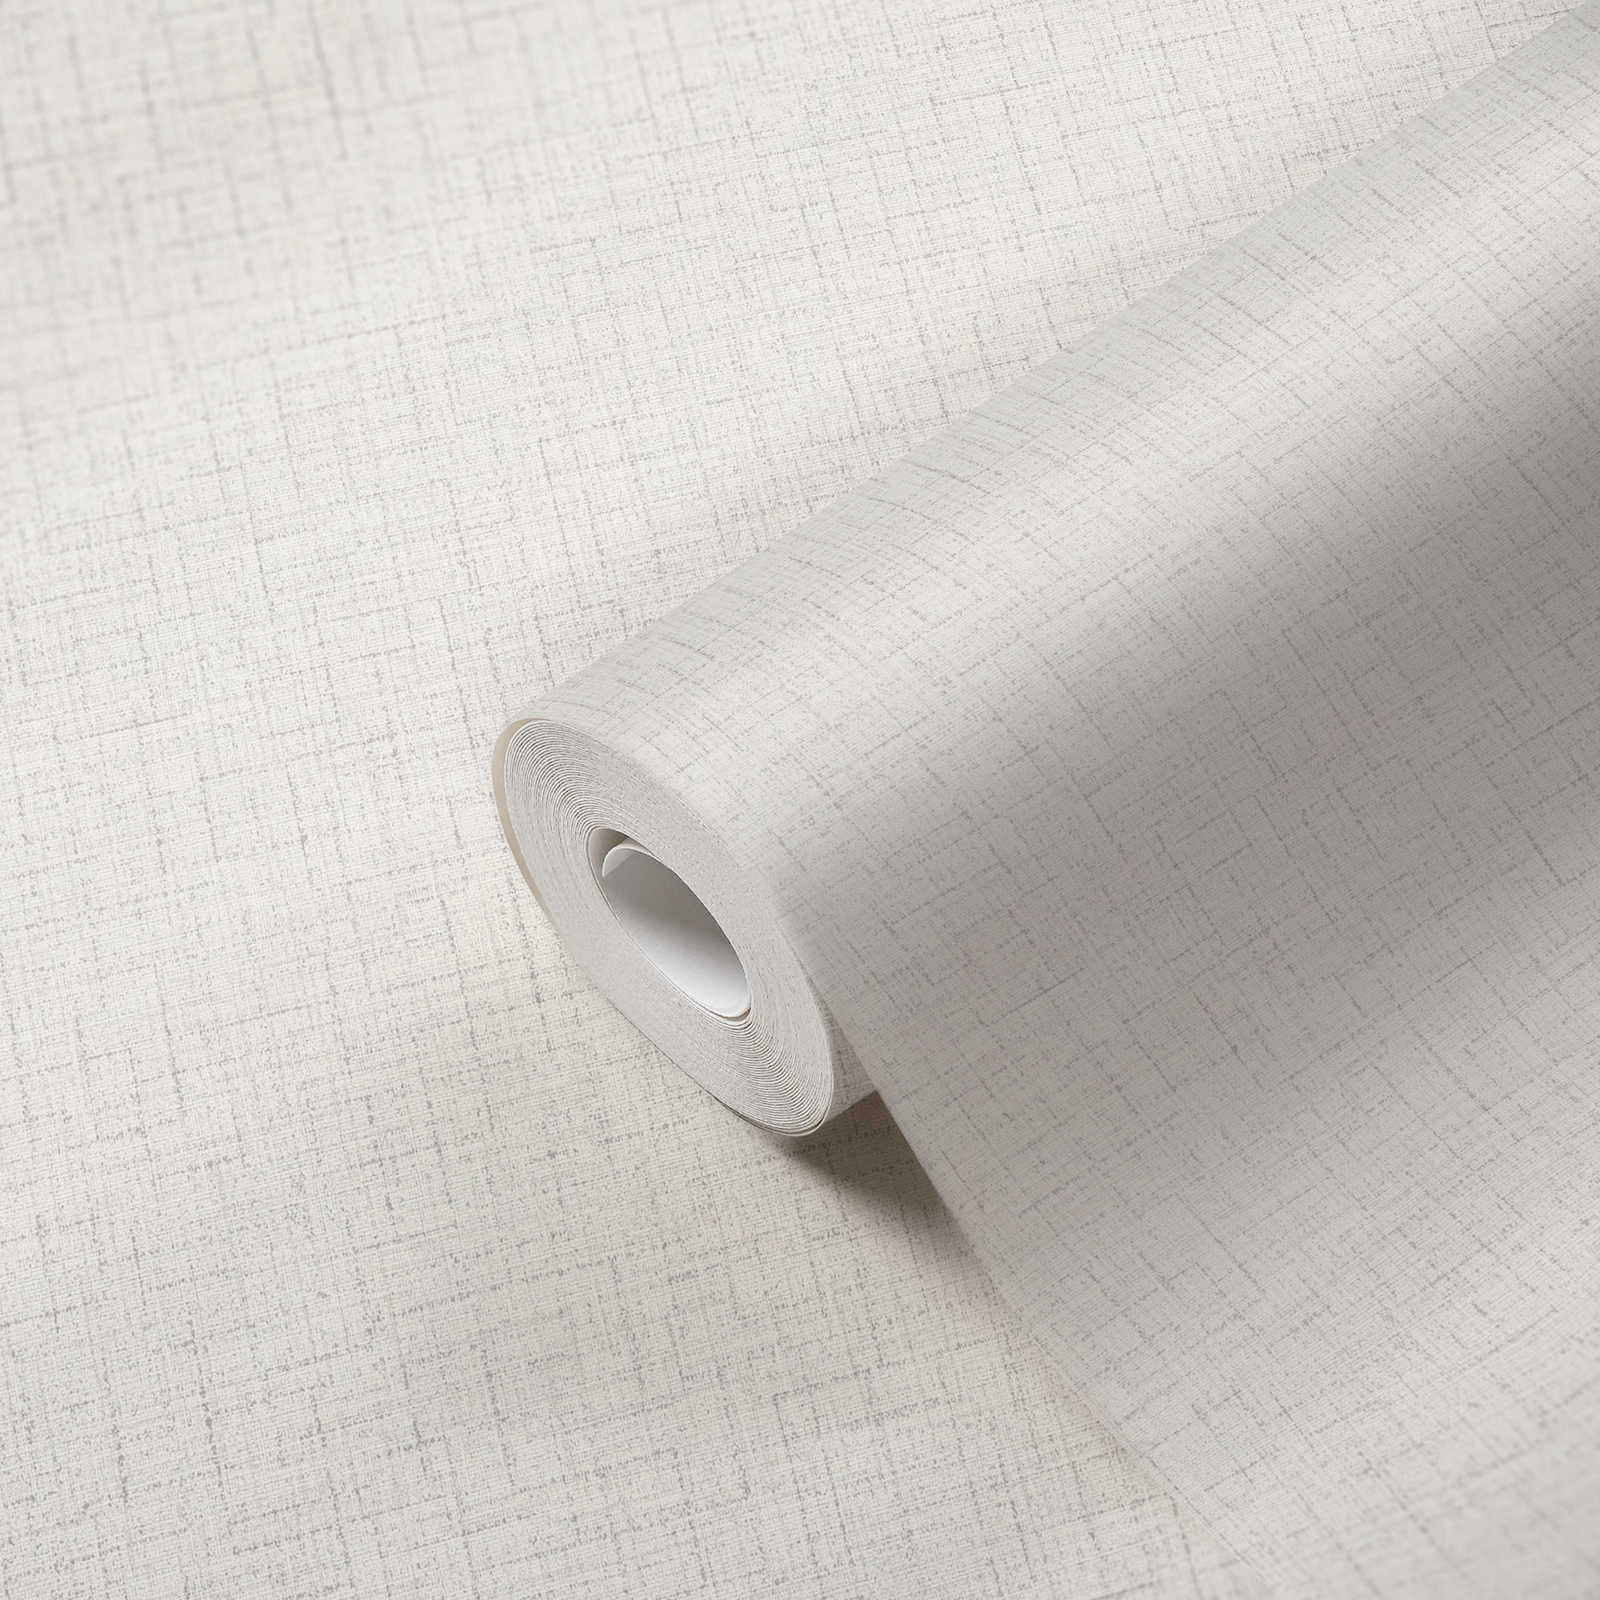             Papier peint uni neutre aspect lin - gris, blanc
        